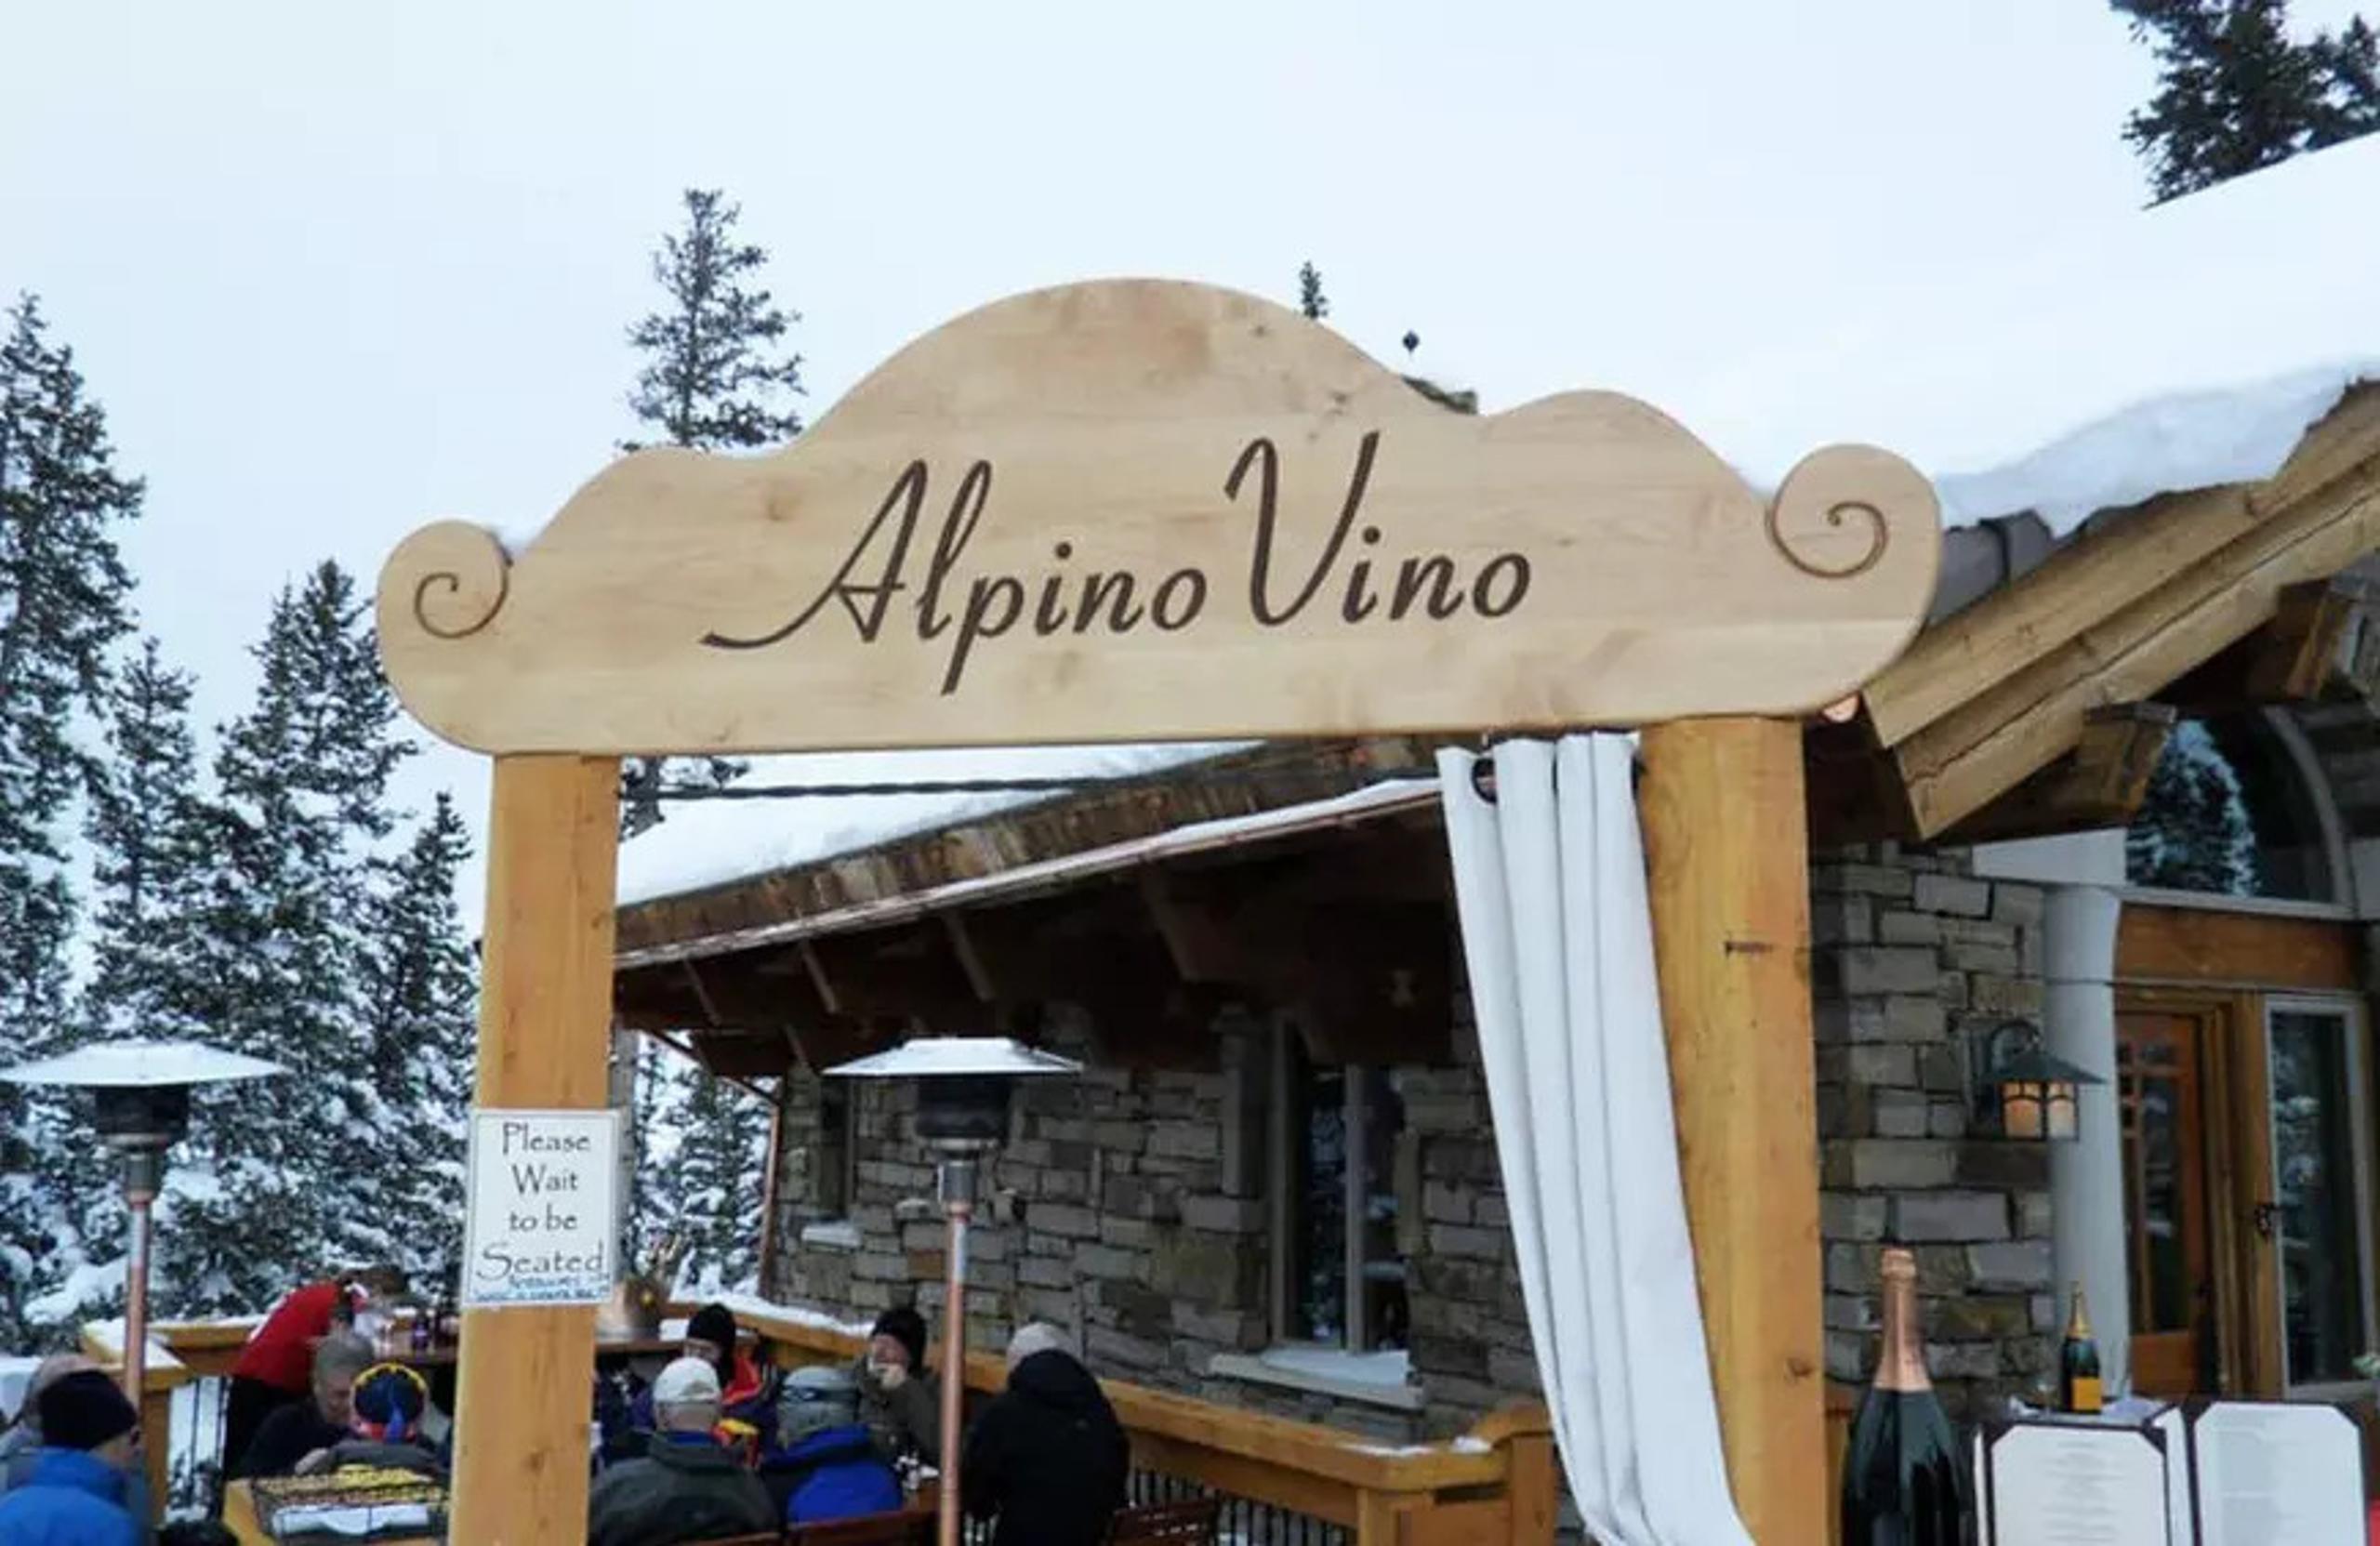 Exterior sign of Alpino Vino alpine restaurant